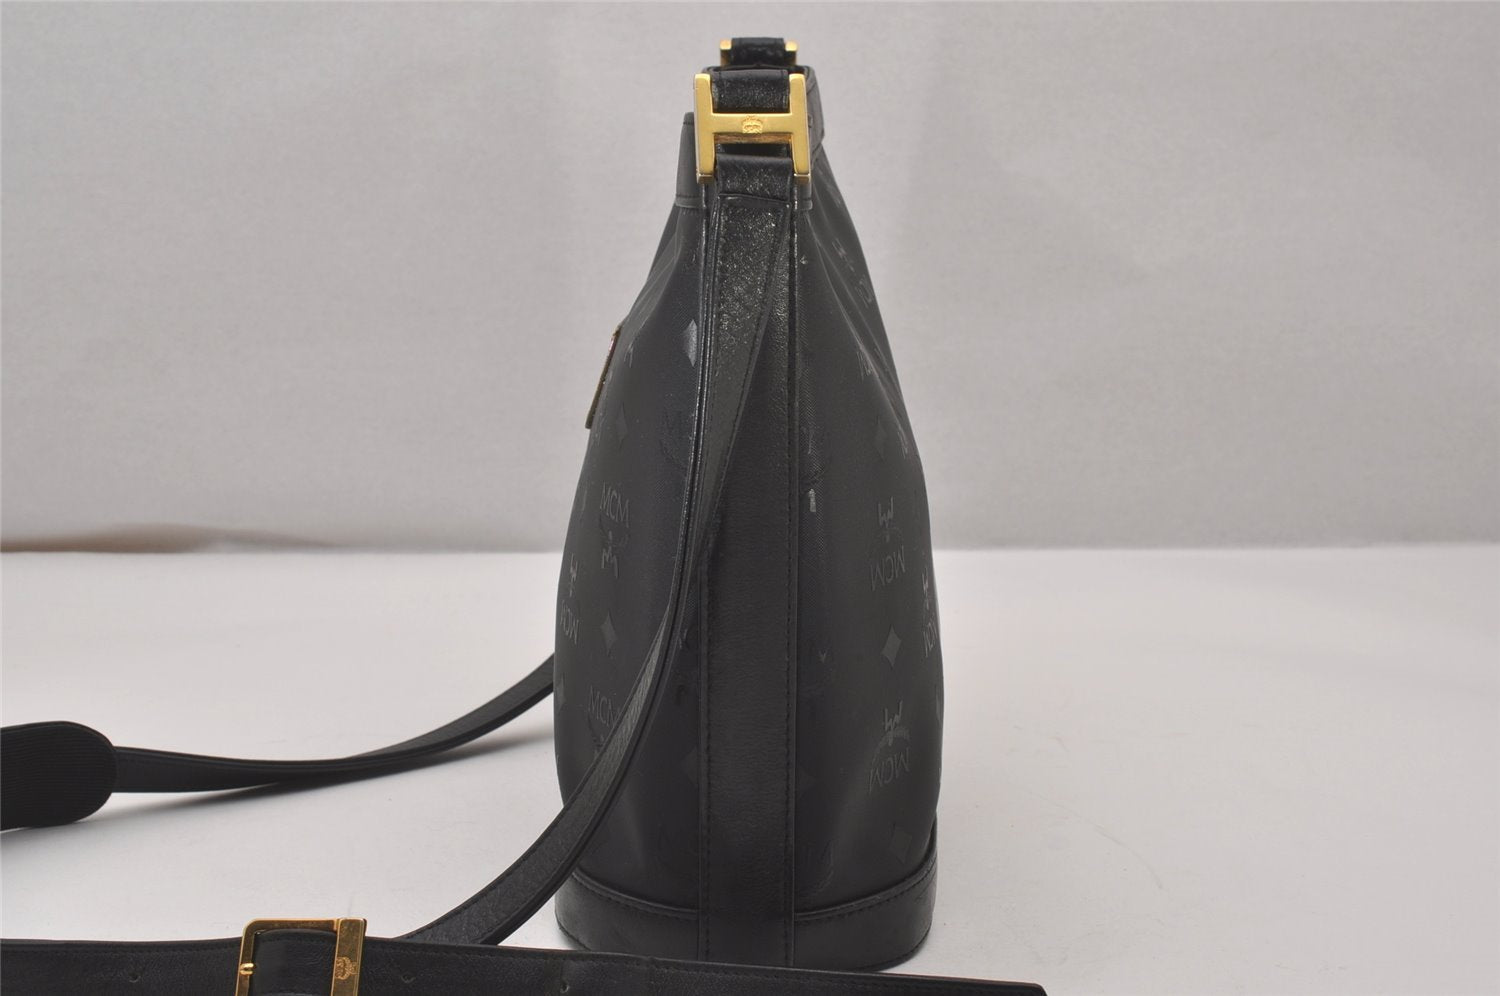 Authentic MCM Vintage Shoulder Cross Body Bag Purse PVC Leather Black 4848I